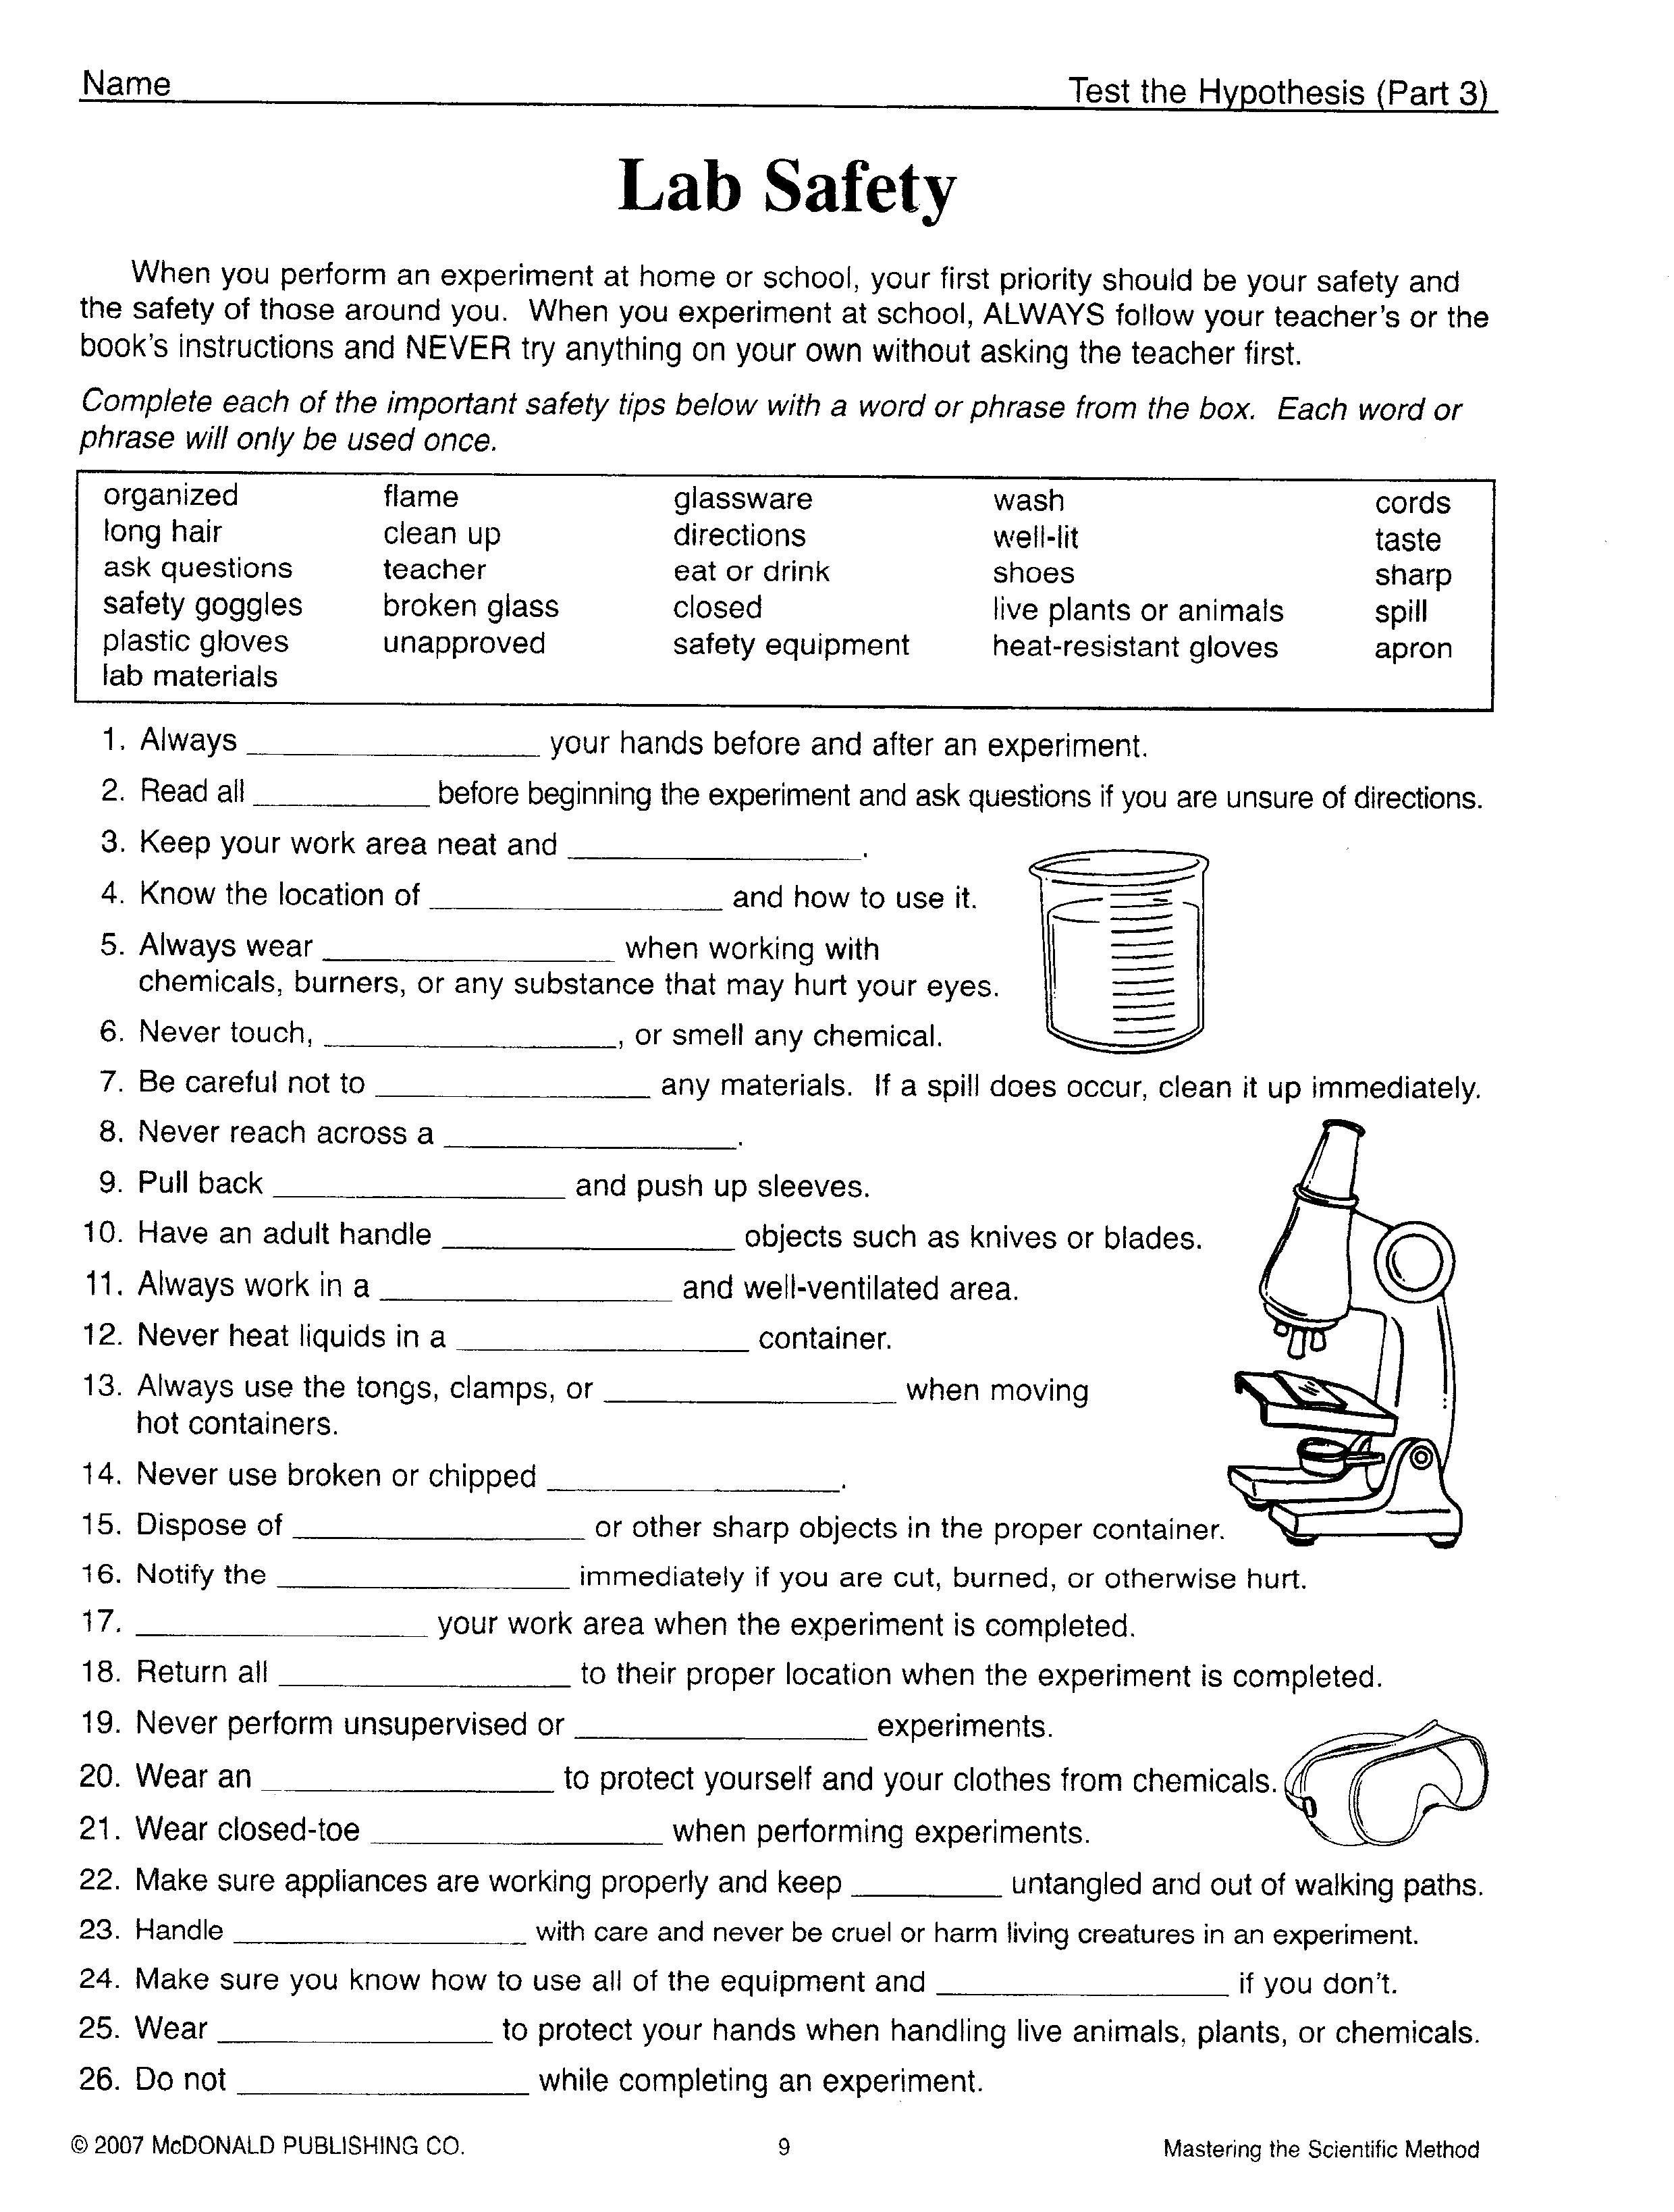 Science Tools Worksheet 4Th Grade Fresh Kids Science Worksheets Free - Free Printable Science Worksheets